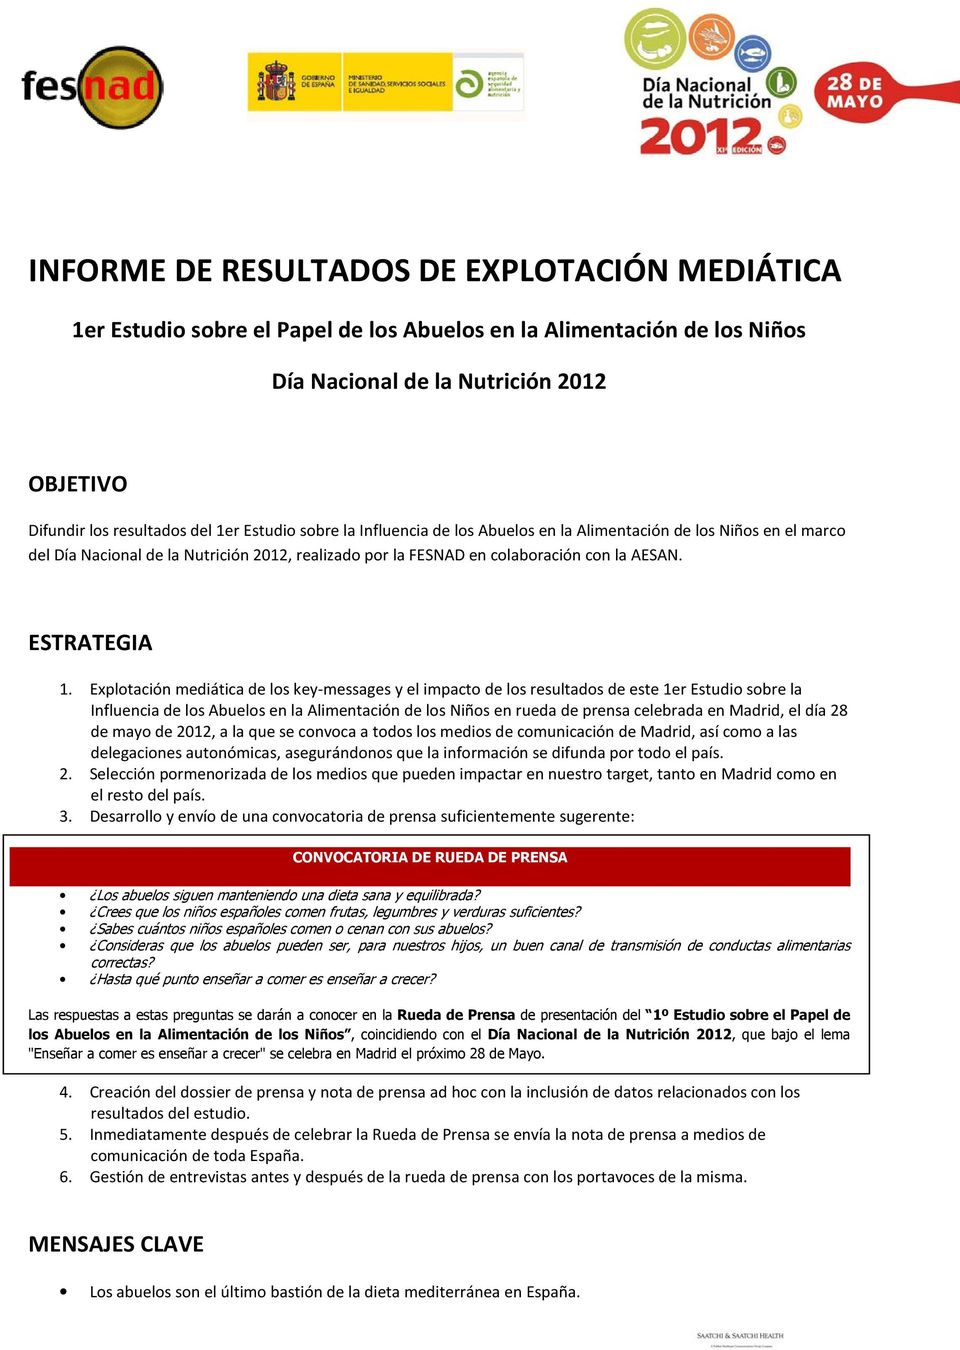 Explotación mediática de los key-messages y el impacto de los resultados de este 1er Estudio sobre la Influencia de los Abuelos en la Alimentación de los Niños en rueda de prensa celebrada en Madrid,